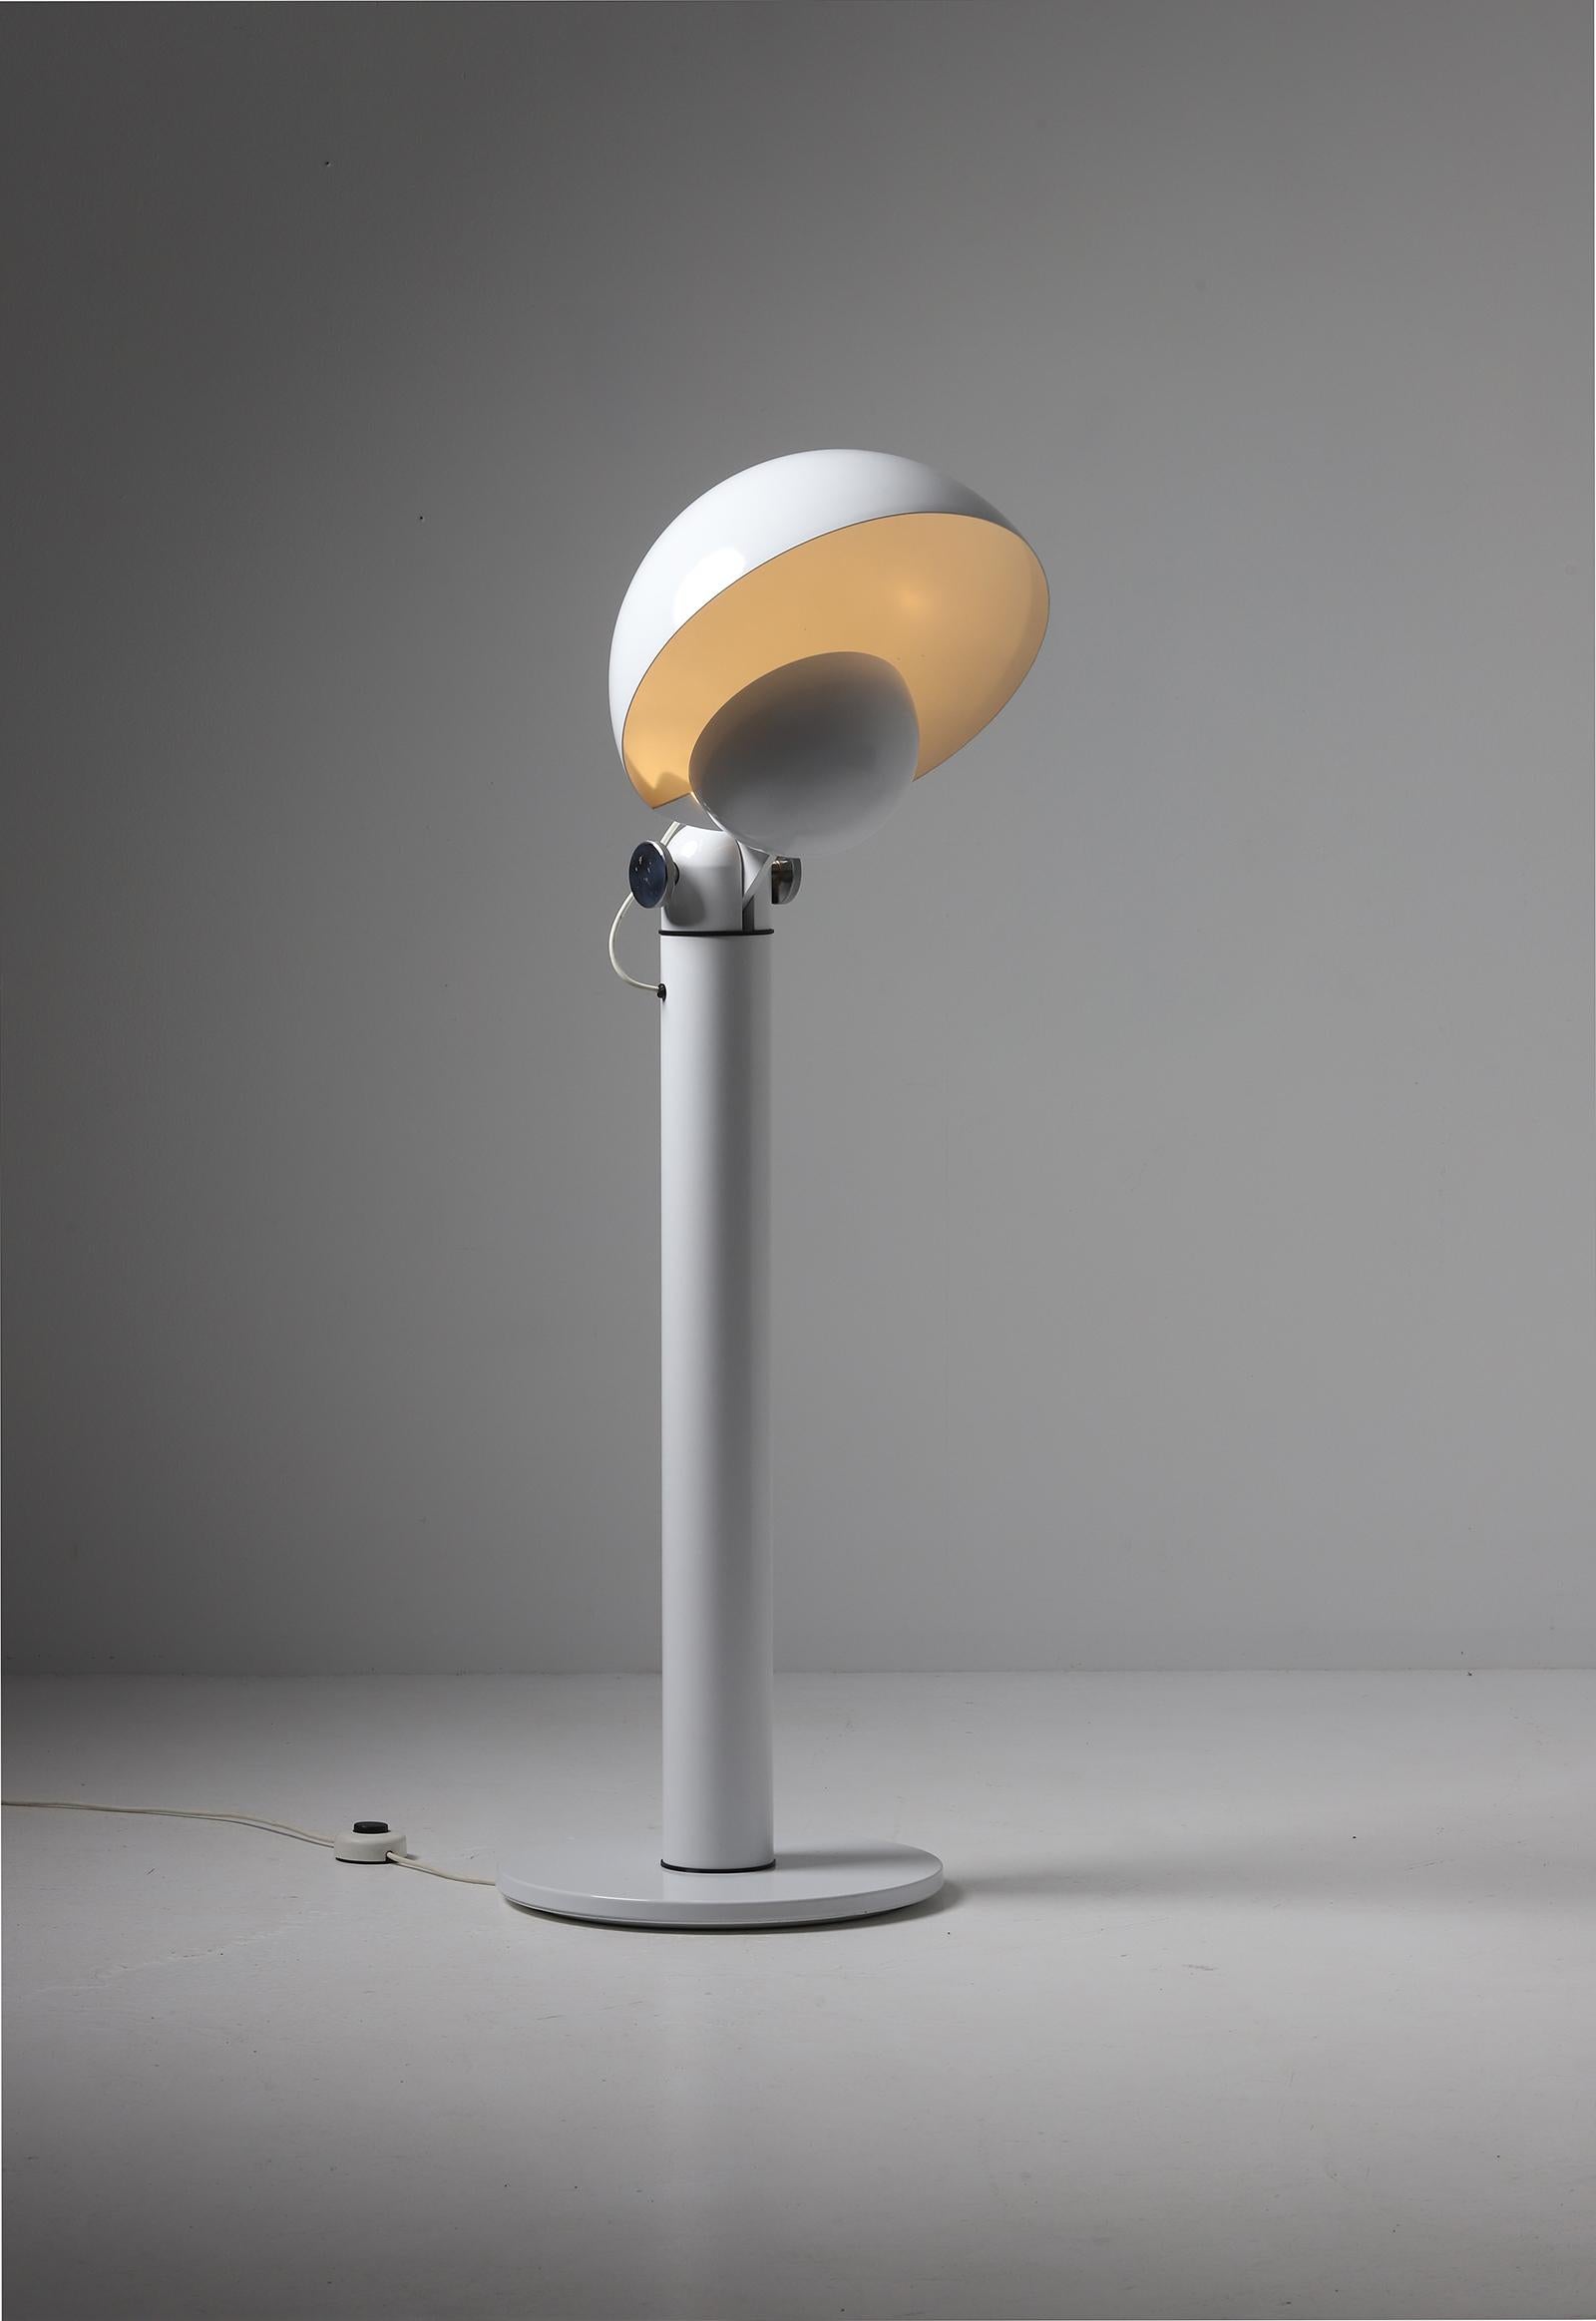 Lampadaire Cuffia conçu par Francesco Buzzi pour Bieffeplast en 1969. Cette lampe postmoderne est fabriquée en aluminium laqué blanc avec deux abat-jours ajustables qui peuvent tourner à 180 degrés. L'utilisation des deux abat-jour confère à la